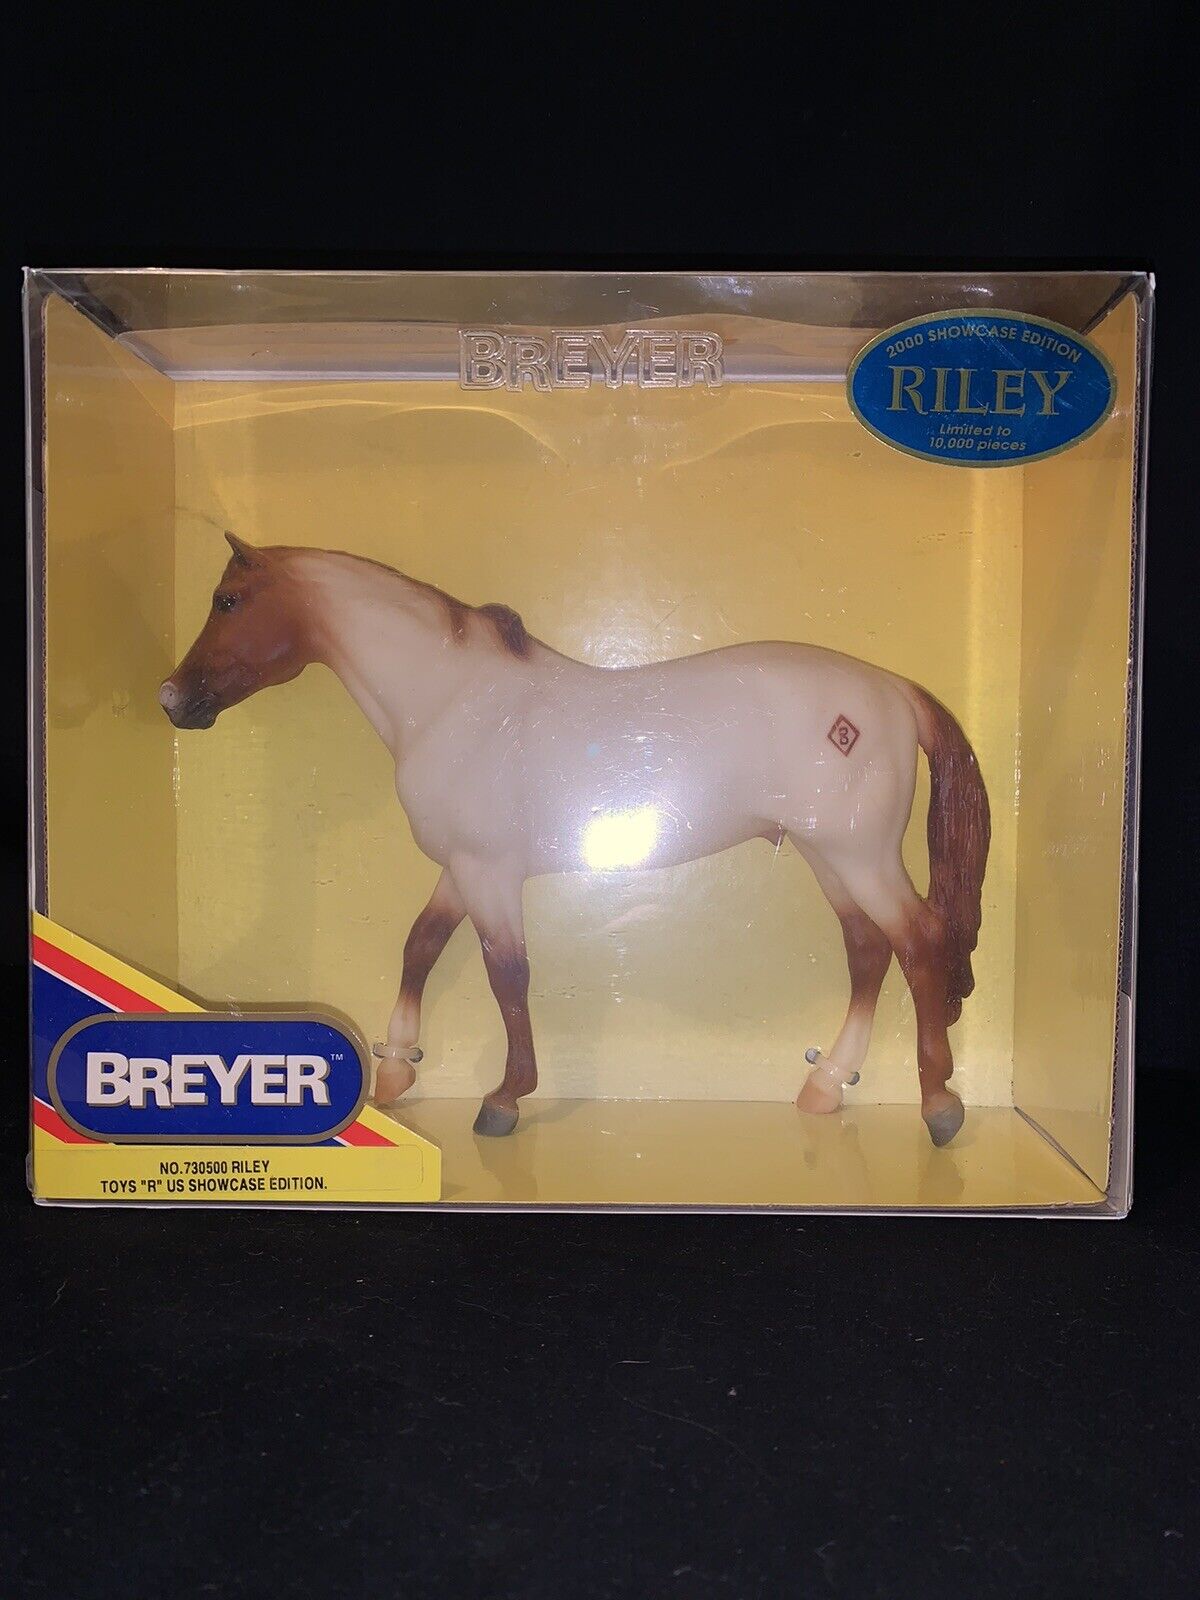 NIB Breyer 730500 Limited Ed /10000 Riley Showcase Edition Toys R Us LE Horse